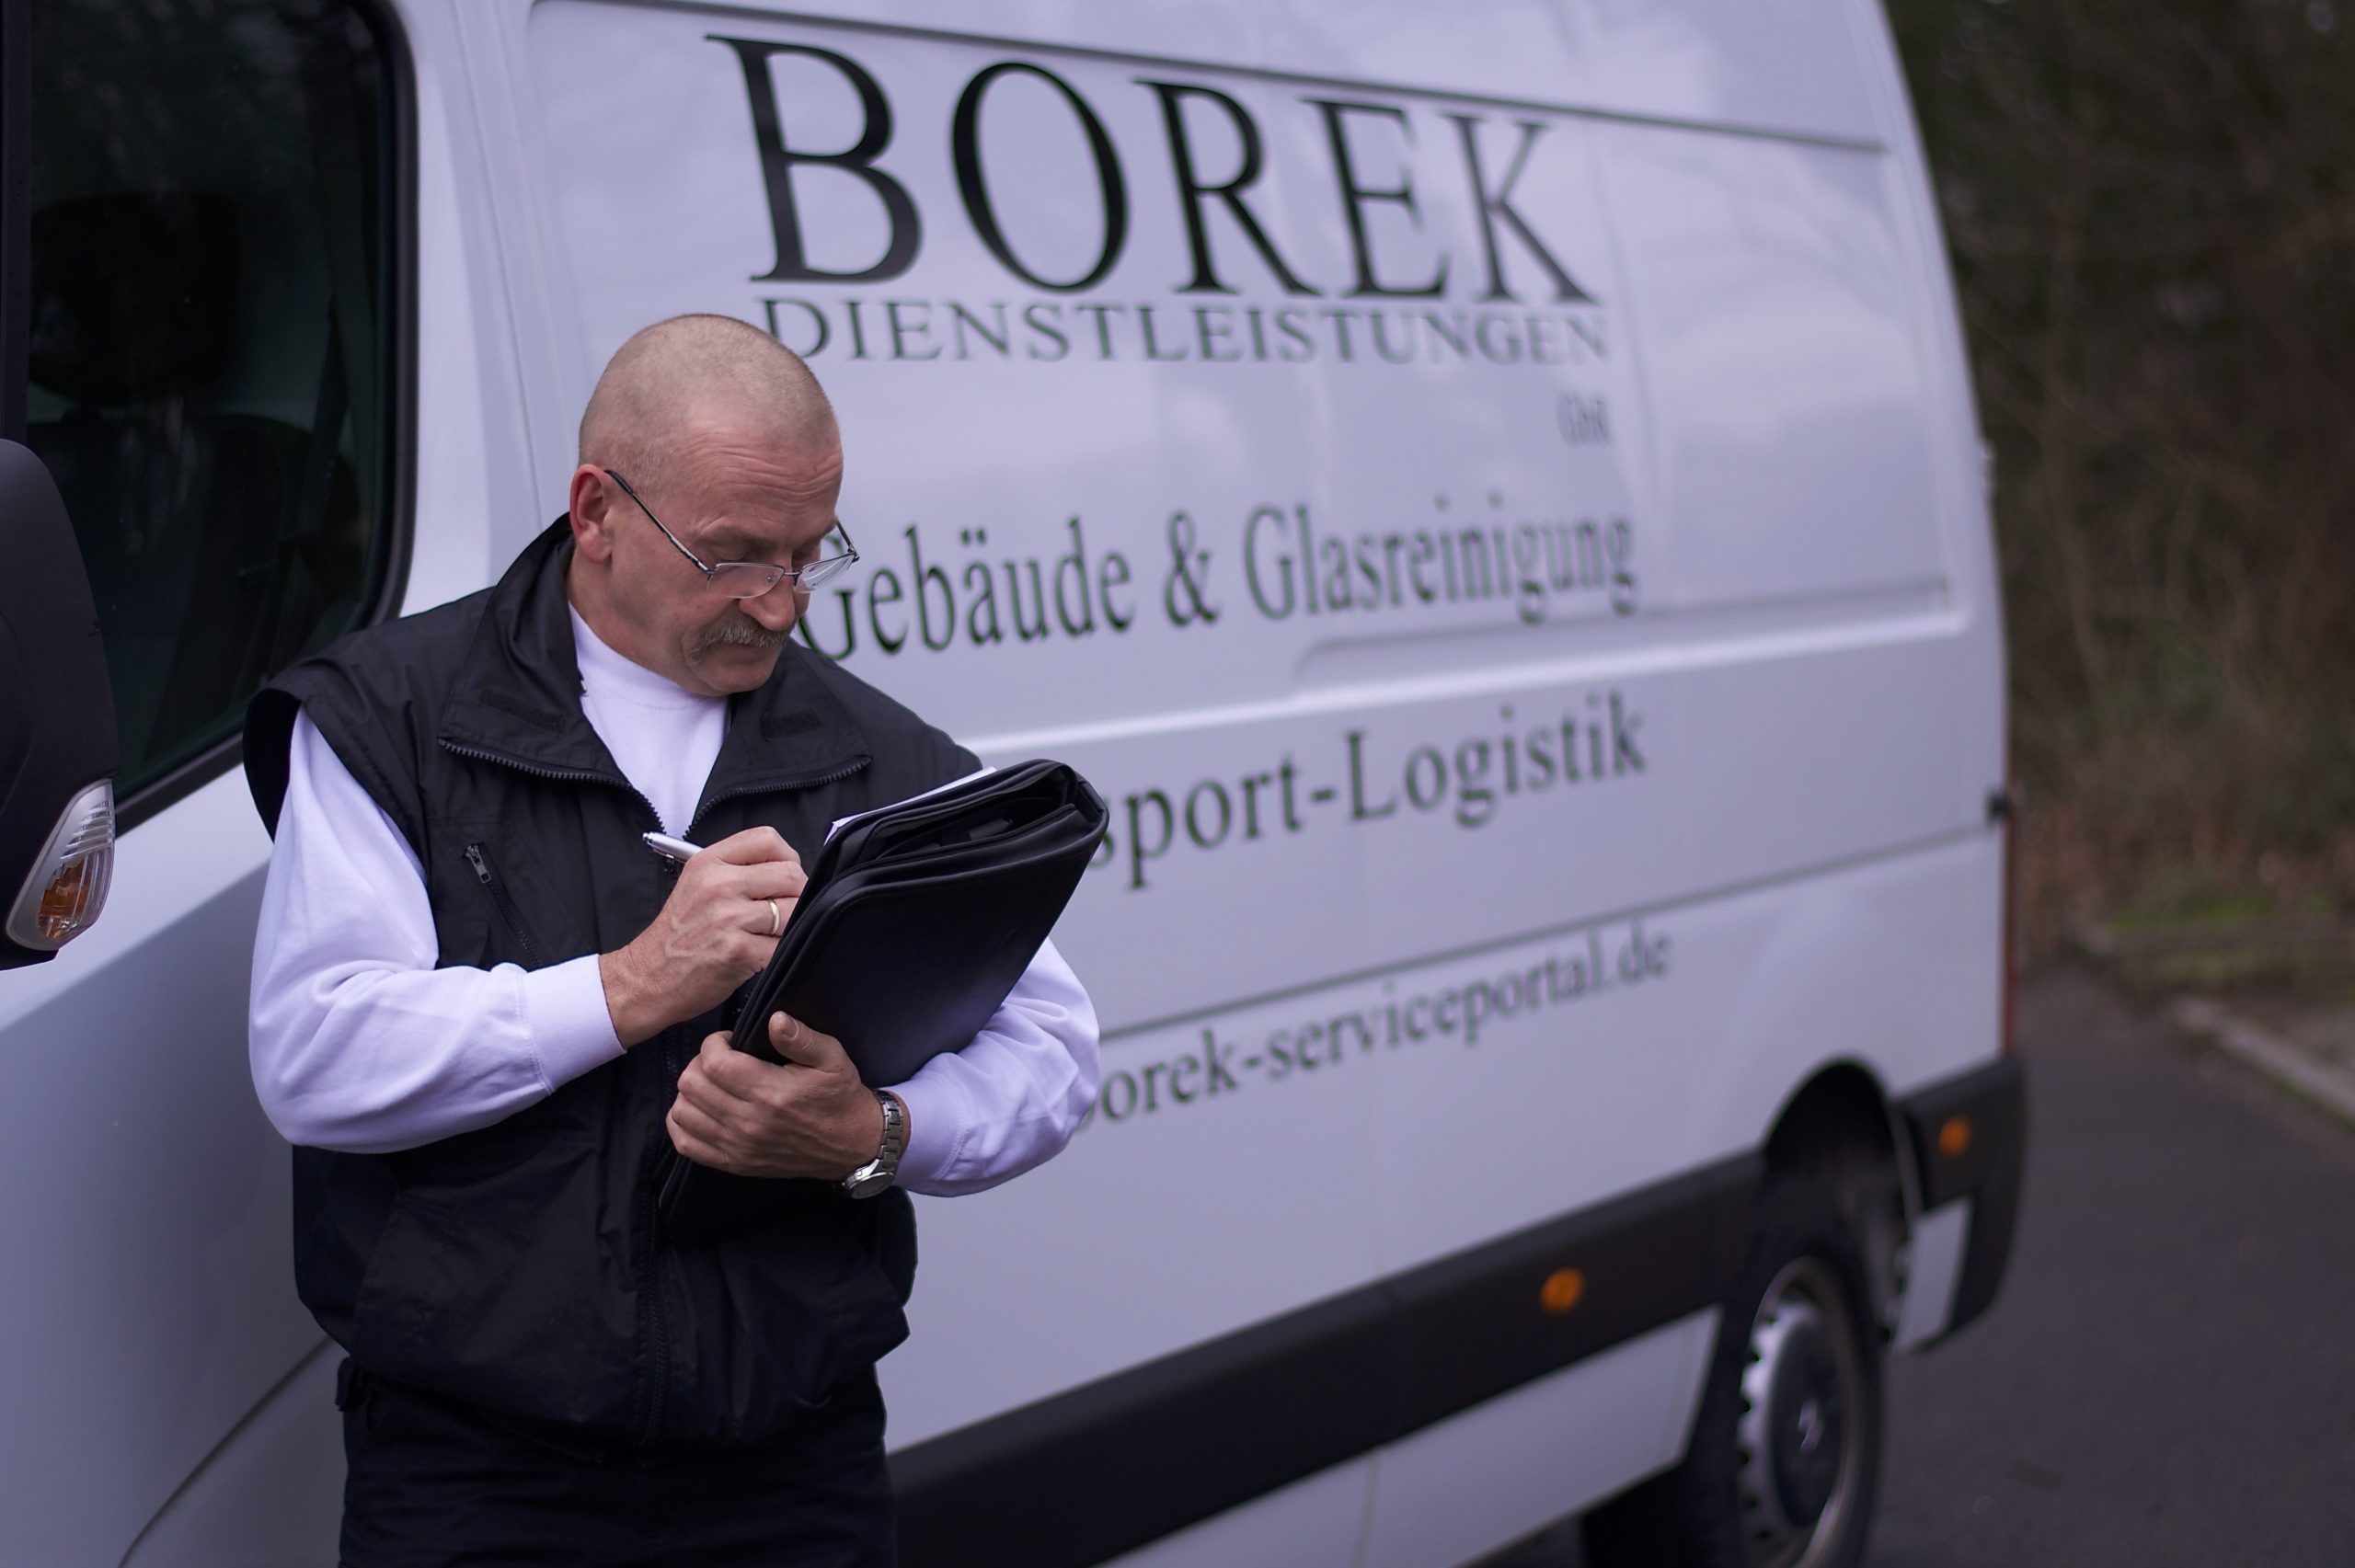 (c) Borek-serviceportal.de